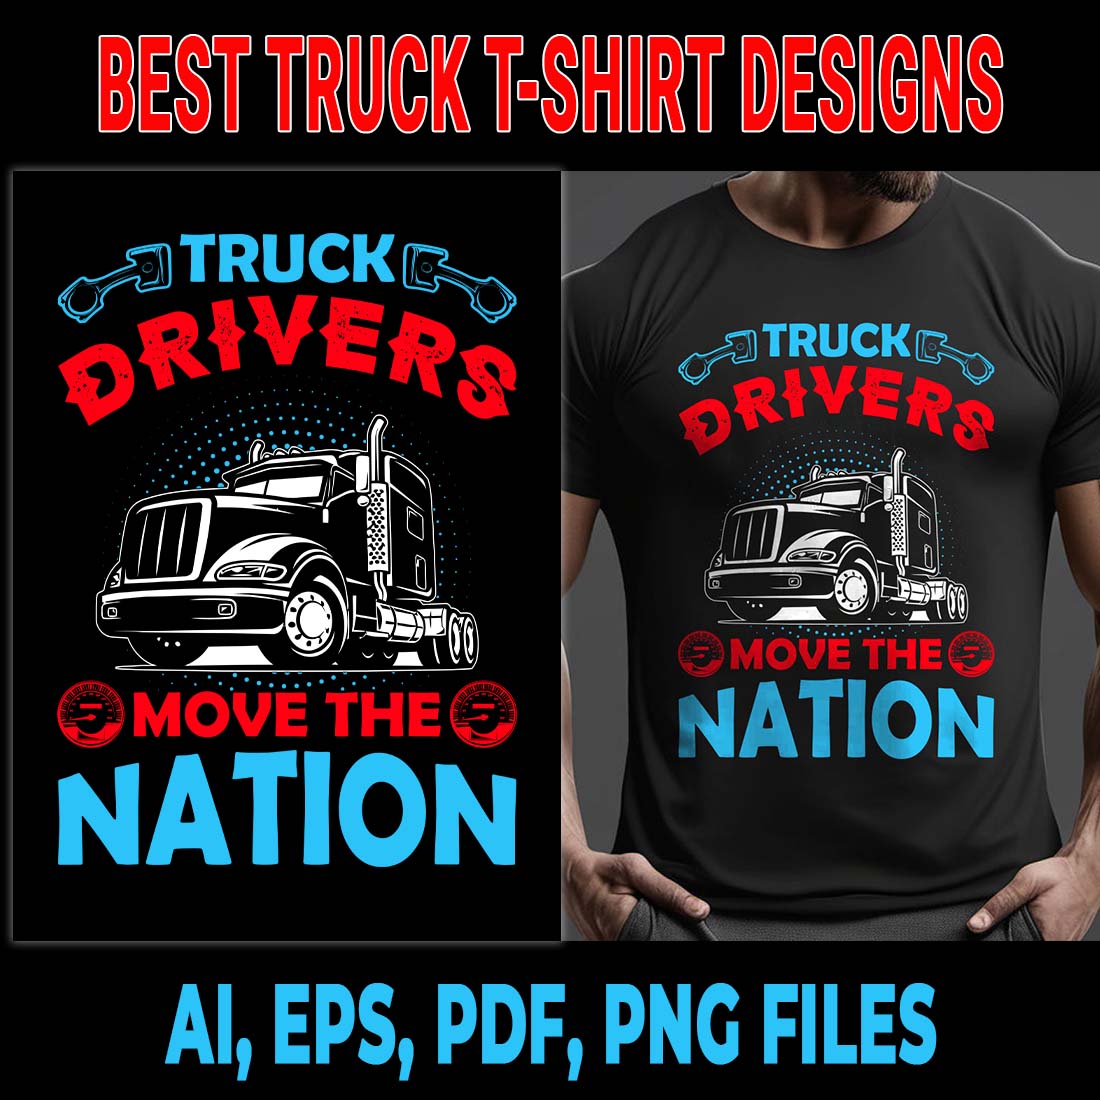 Truck T-shirt Design | Best Truck T-shirt | T-Shirt Design preview image.